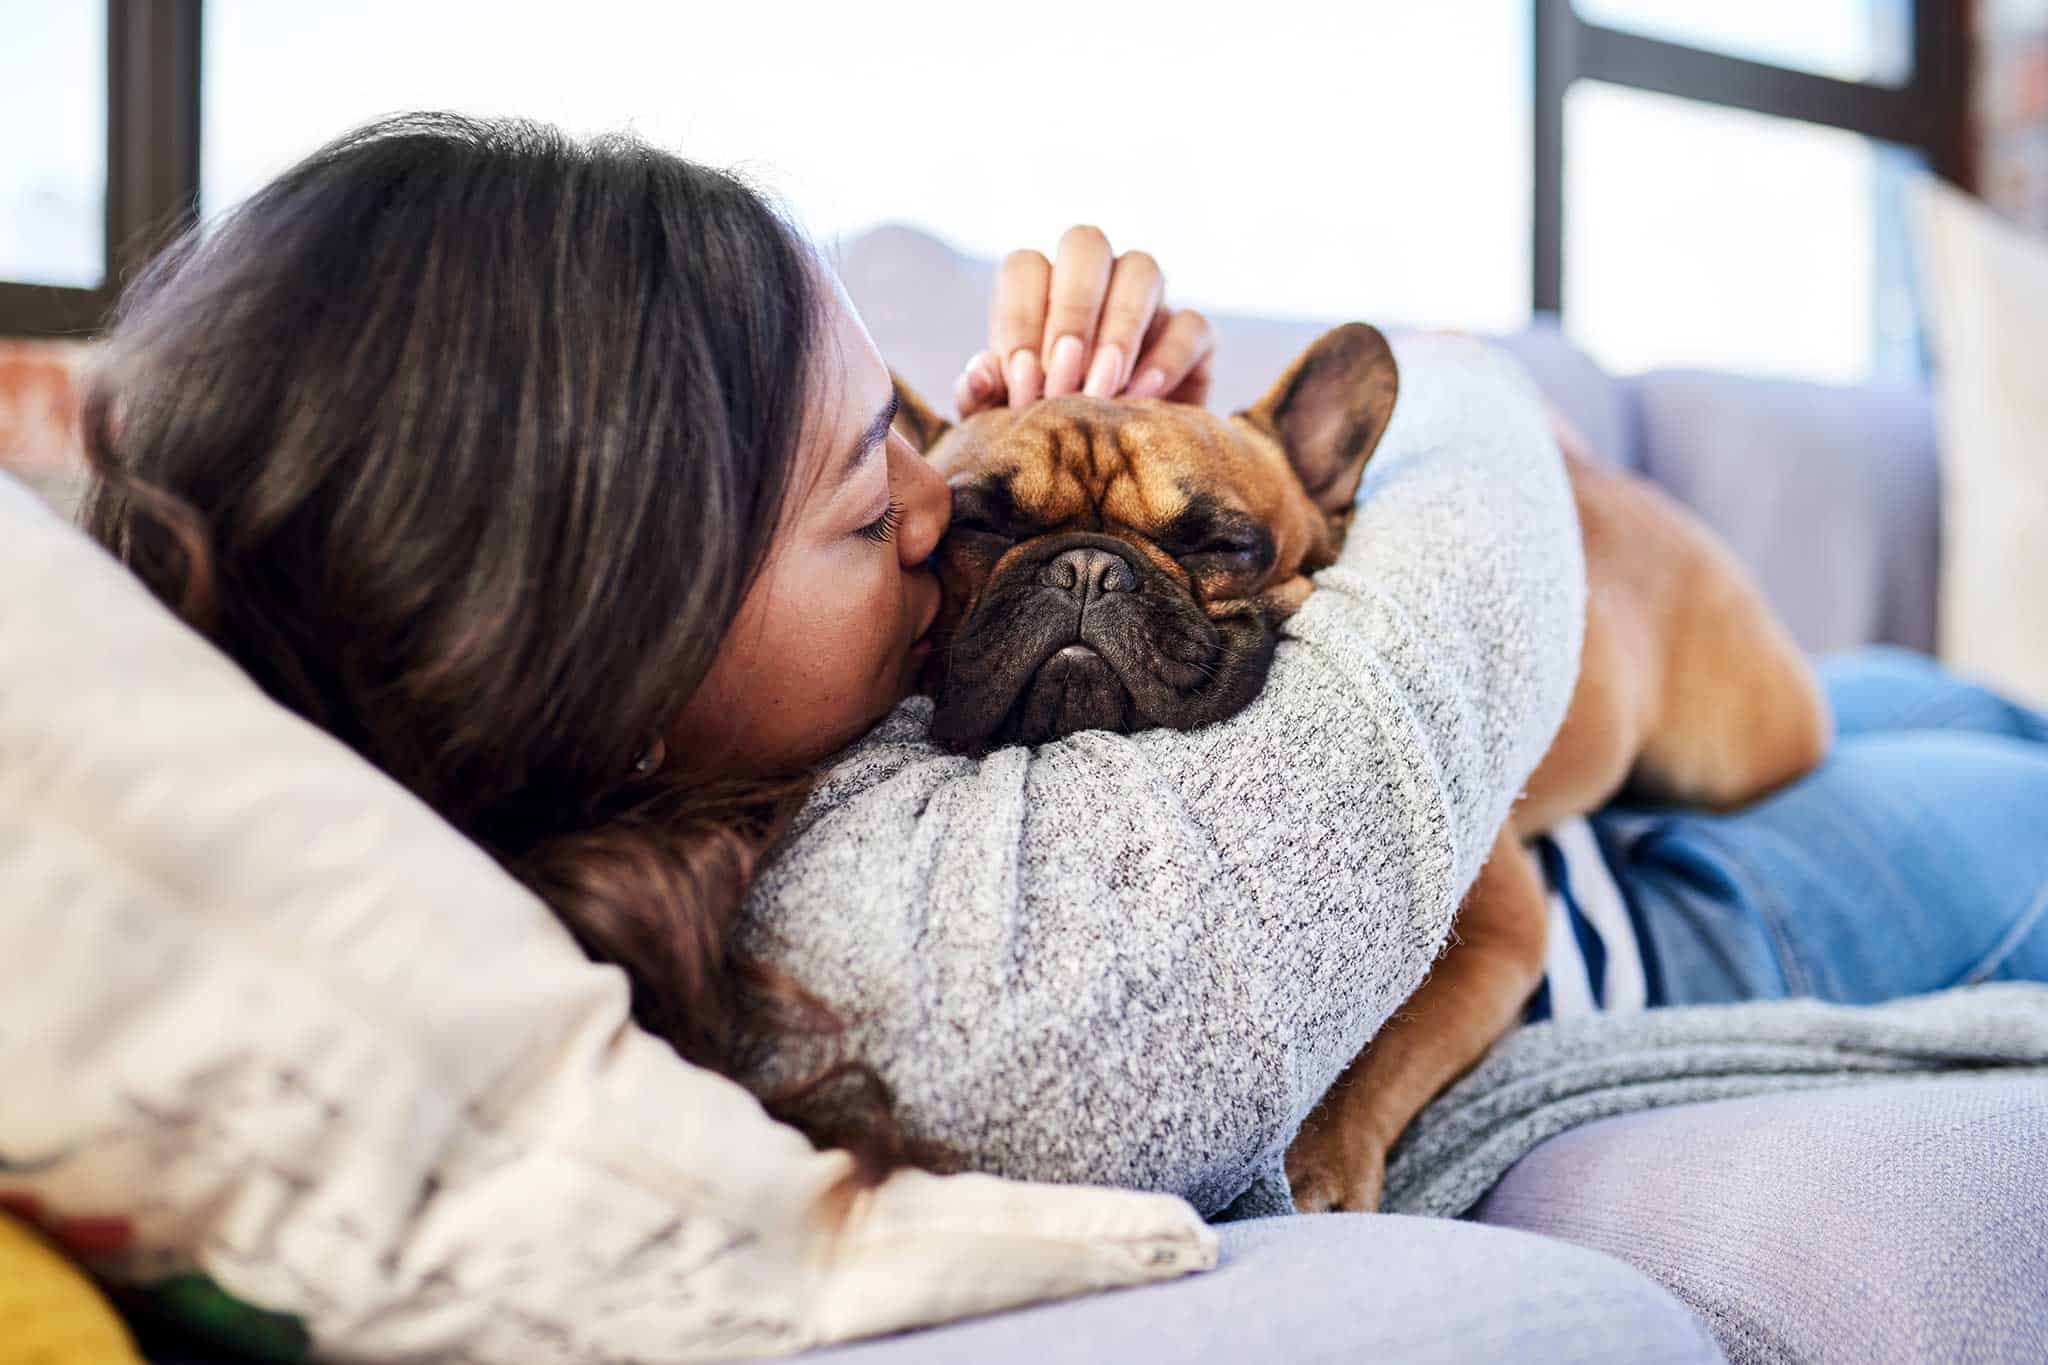 A French bulldog cuddling with their human